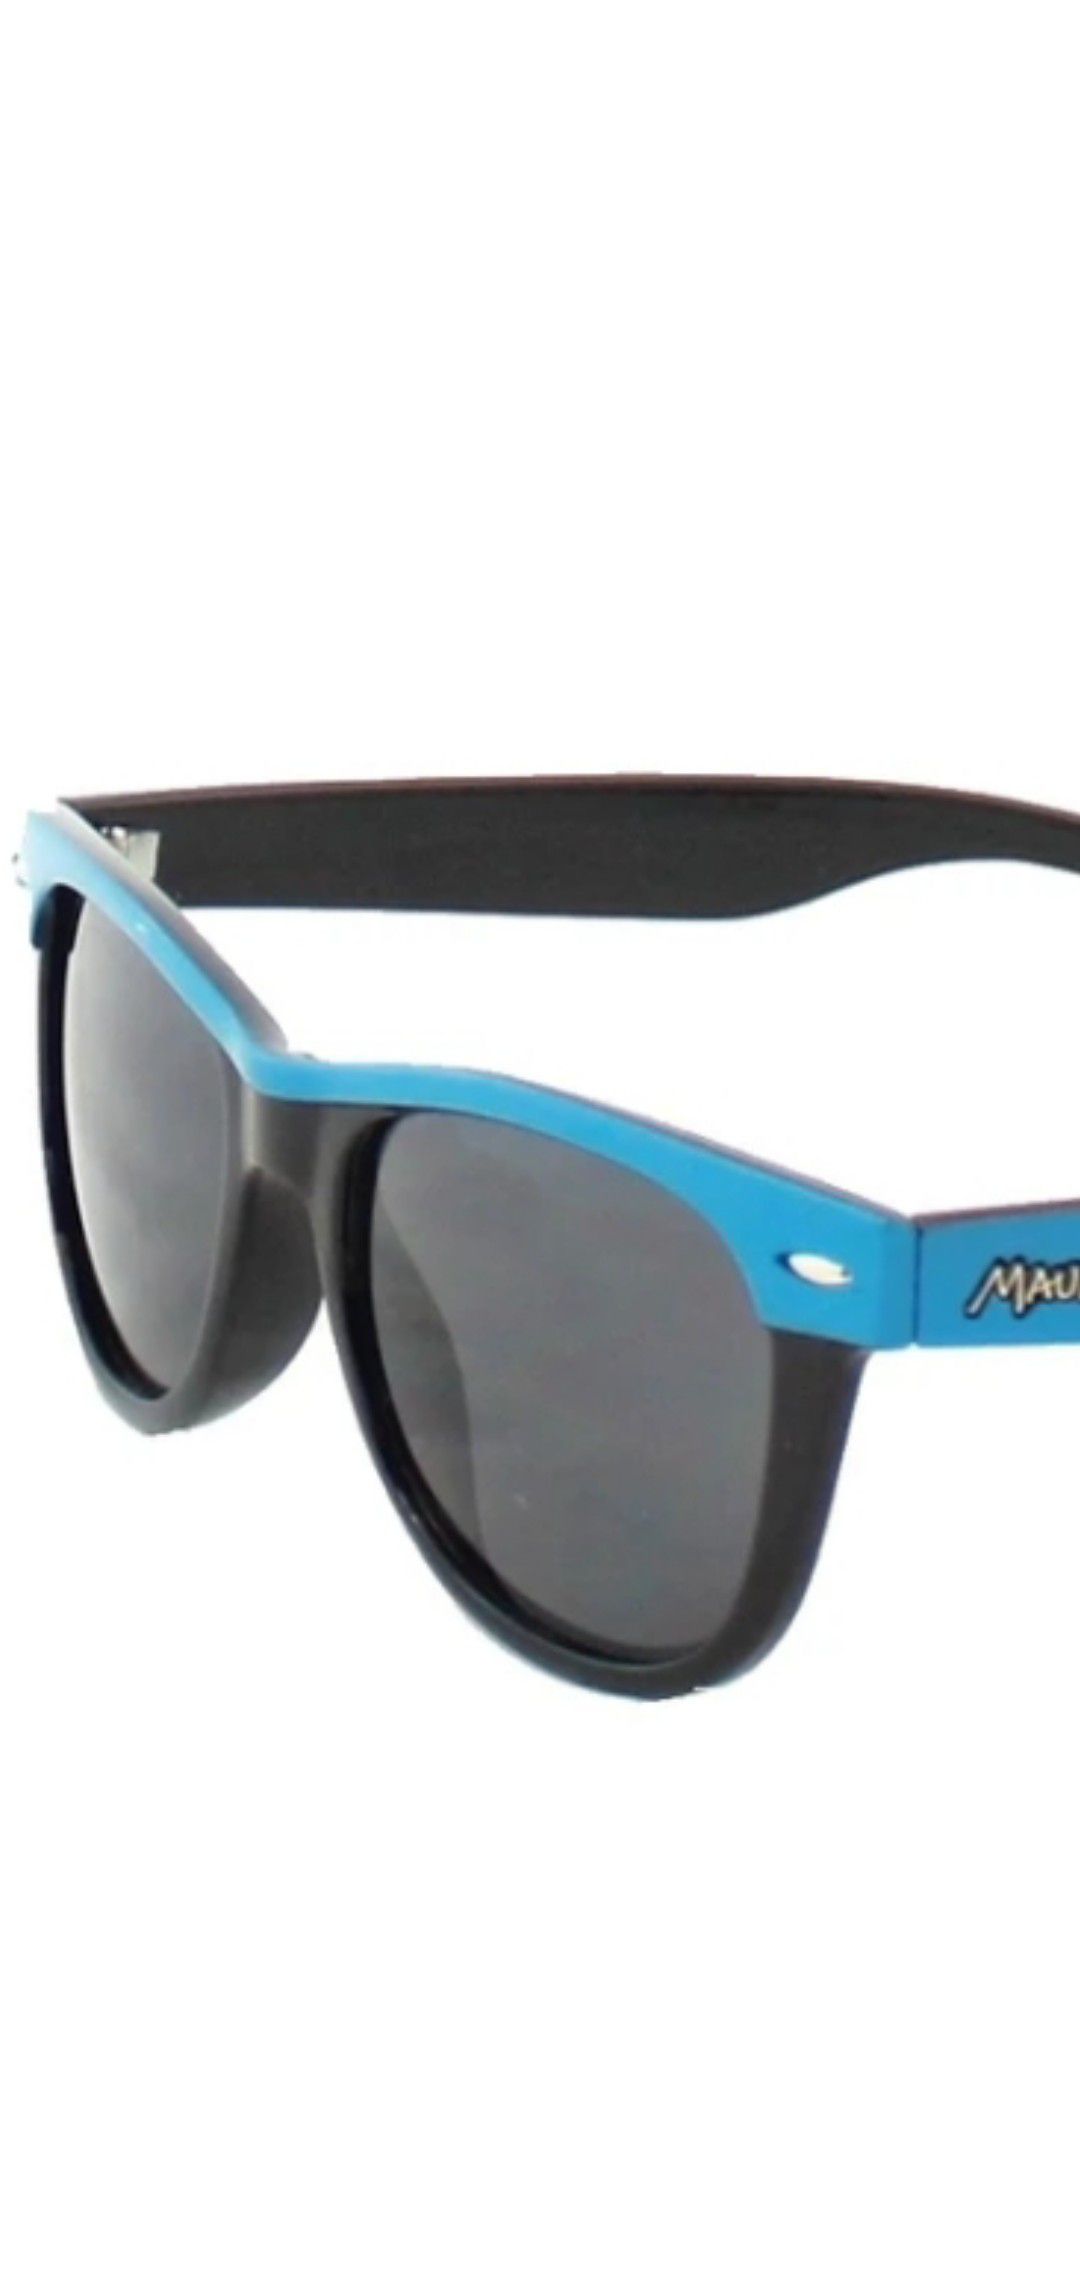 New Maui and son sunglasses